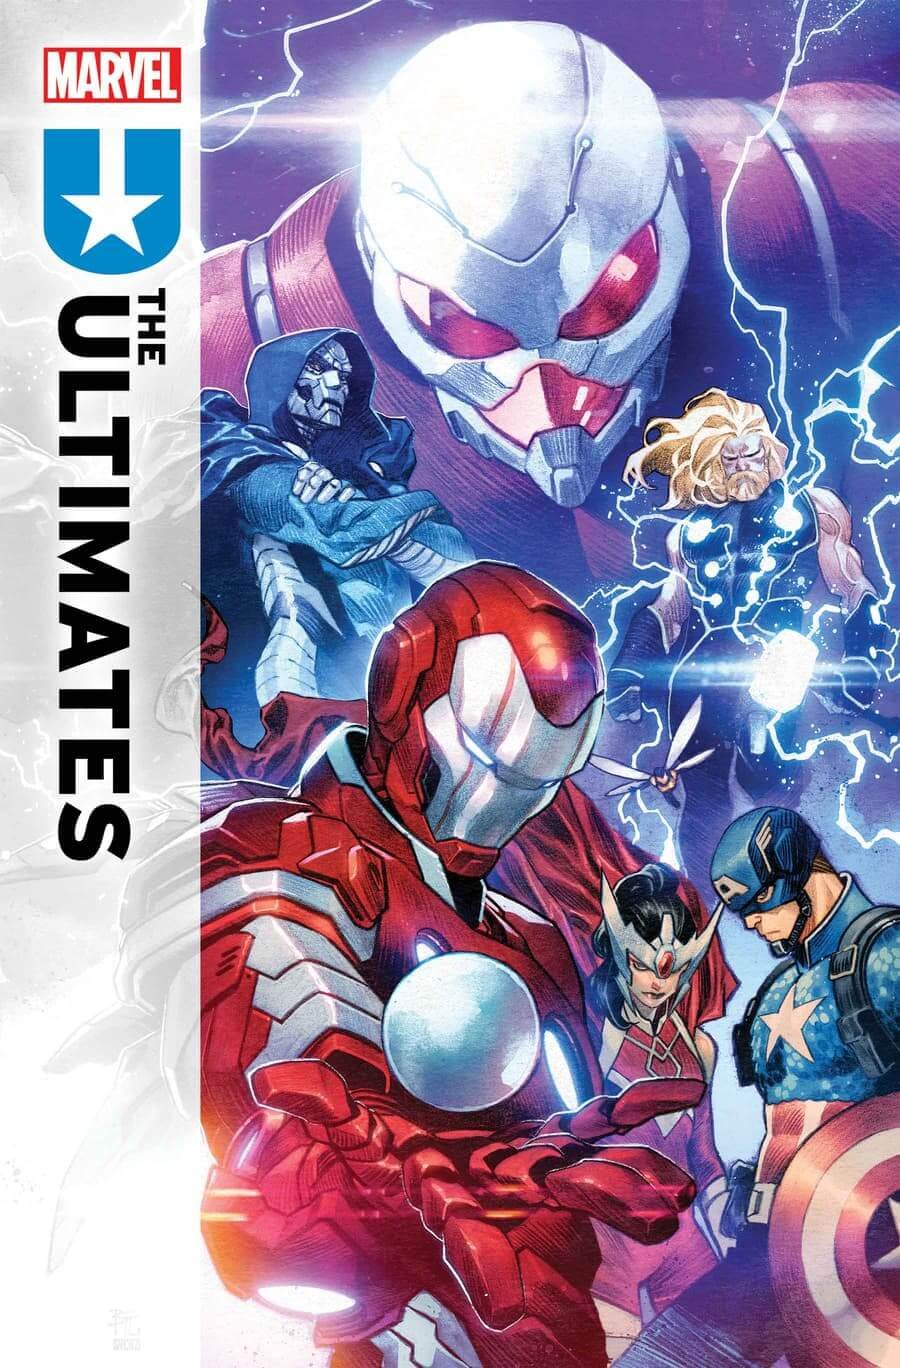 Cover di Ultimates 1 di Dike Ruan, dove vediamo anche i nuovi personaggi Giant-Man e Wasp